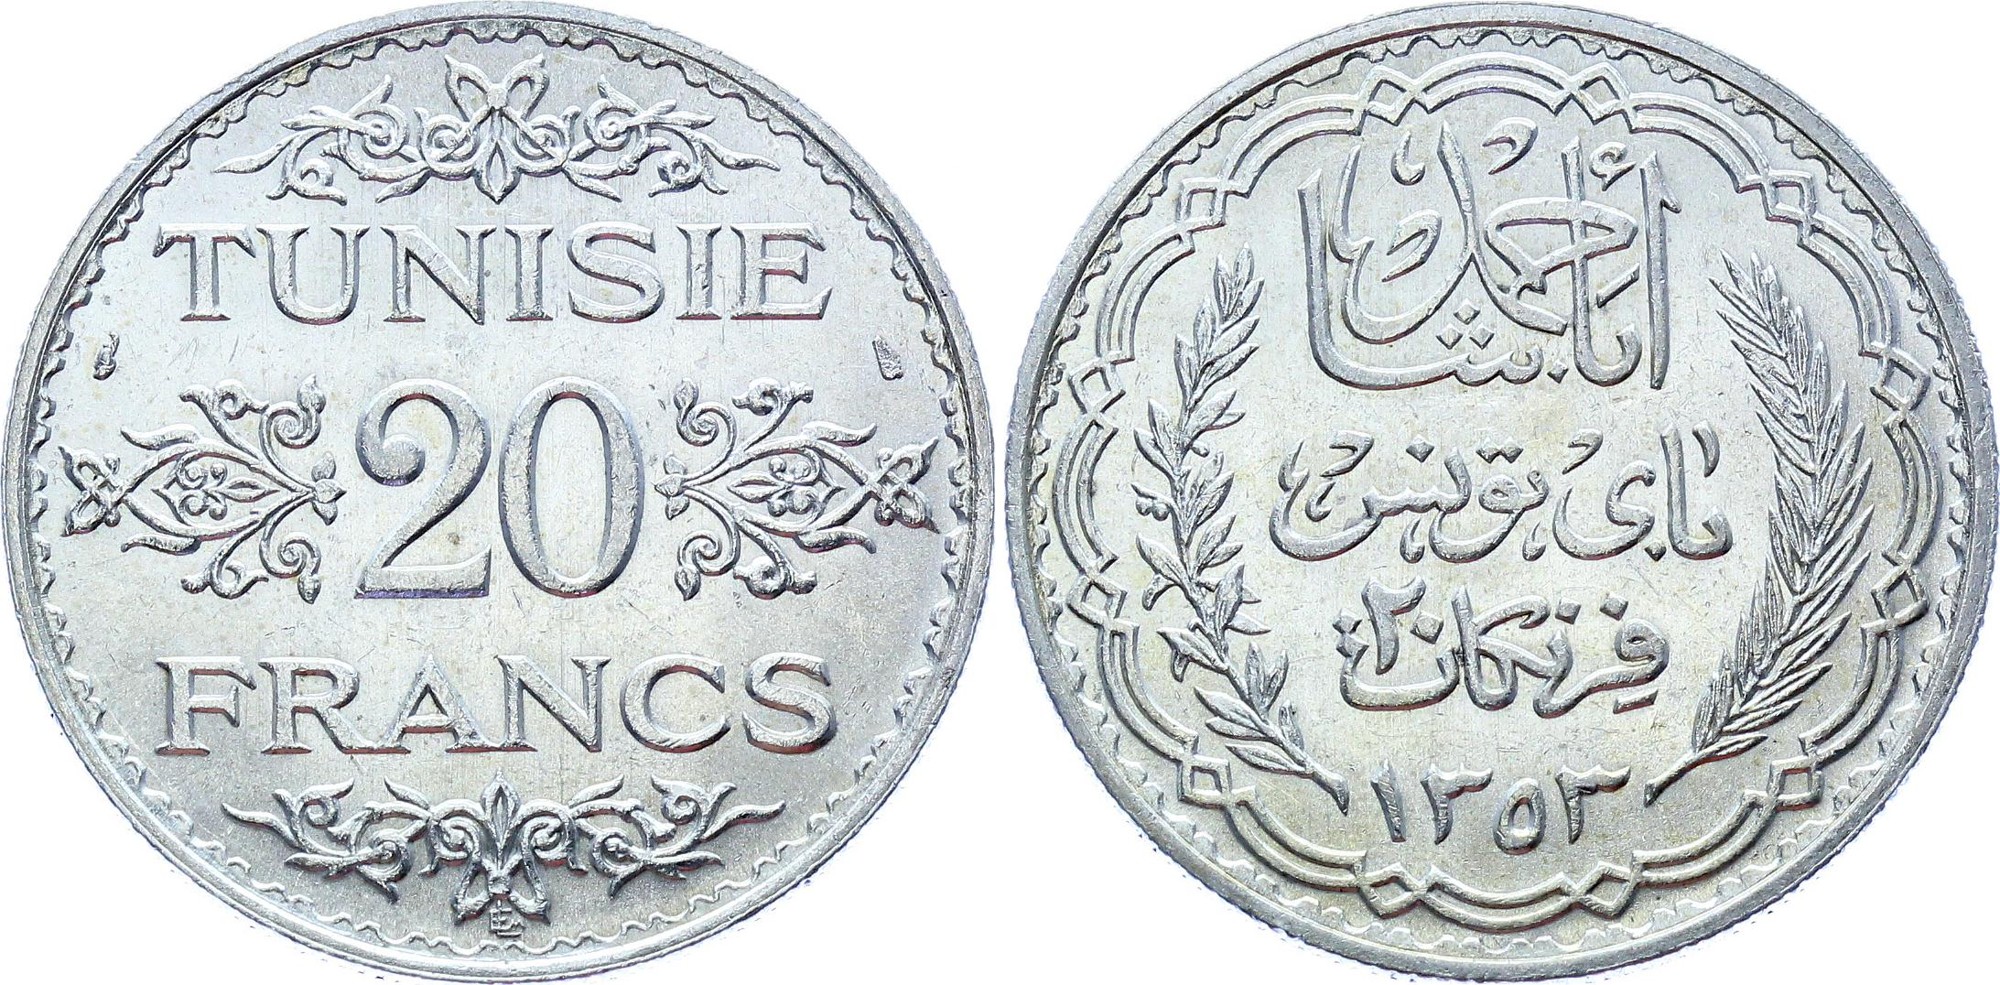 Tunisia 20 Francs 1934 AH 1353